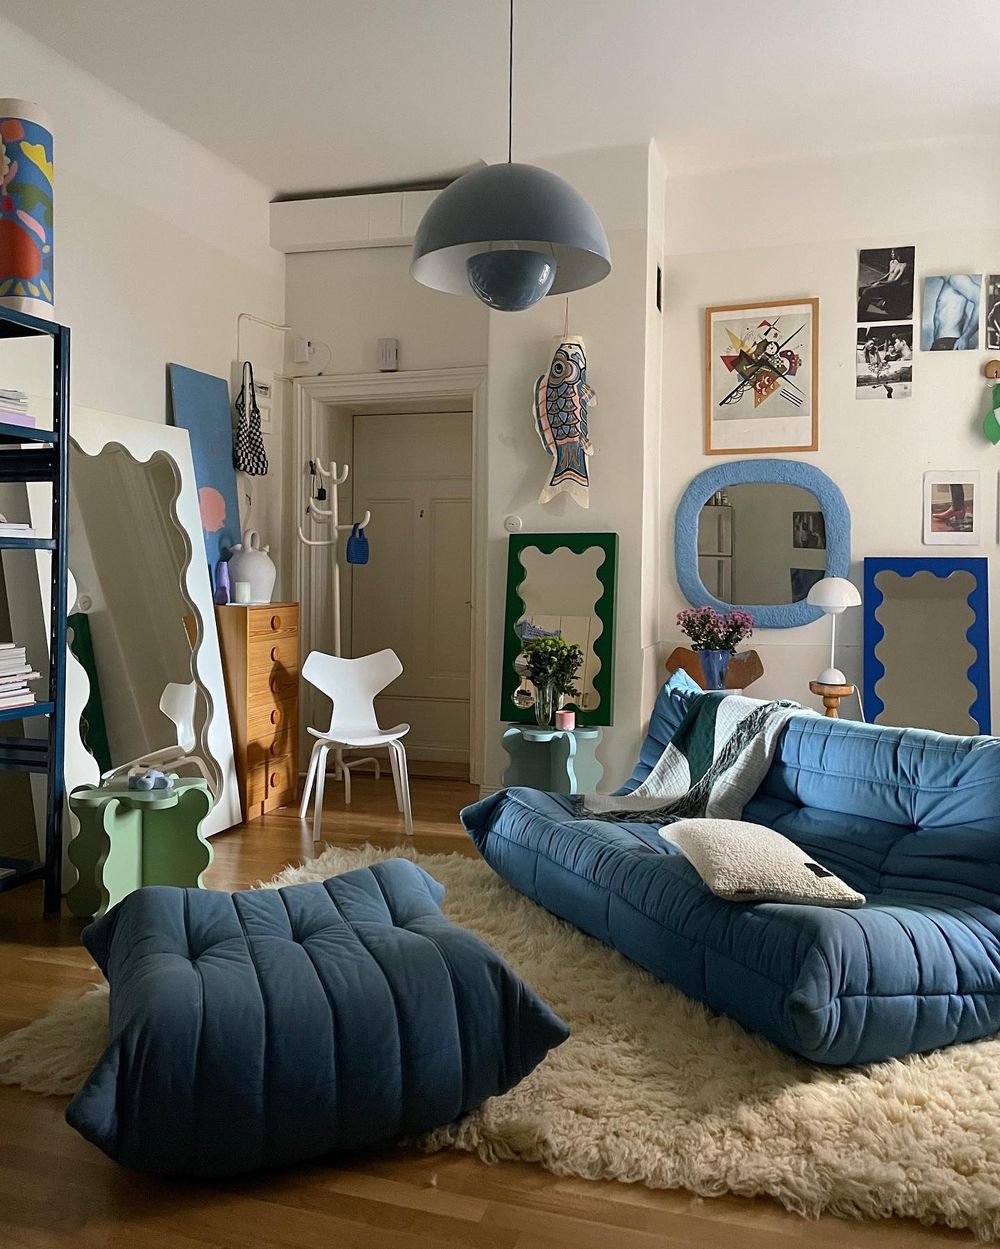 Togo sofa blue with Footrest ideas @gustafwestman